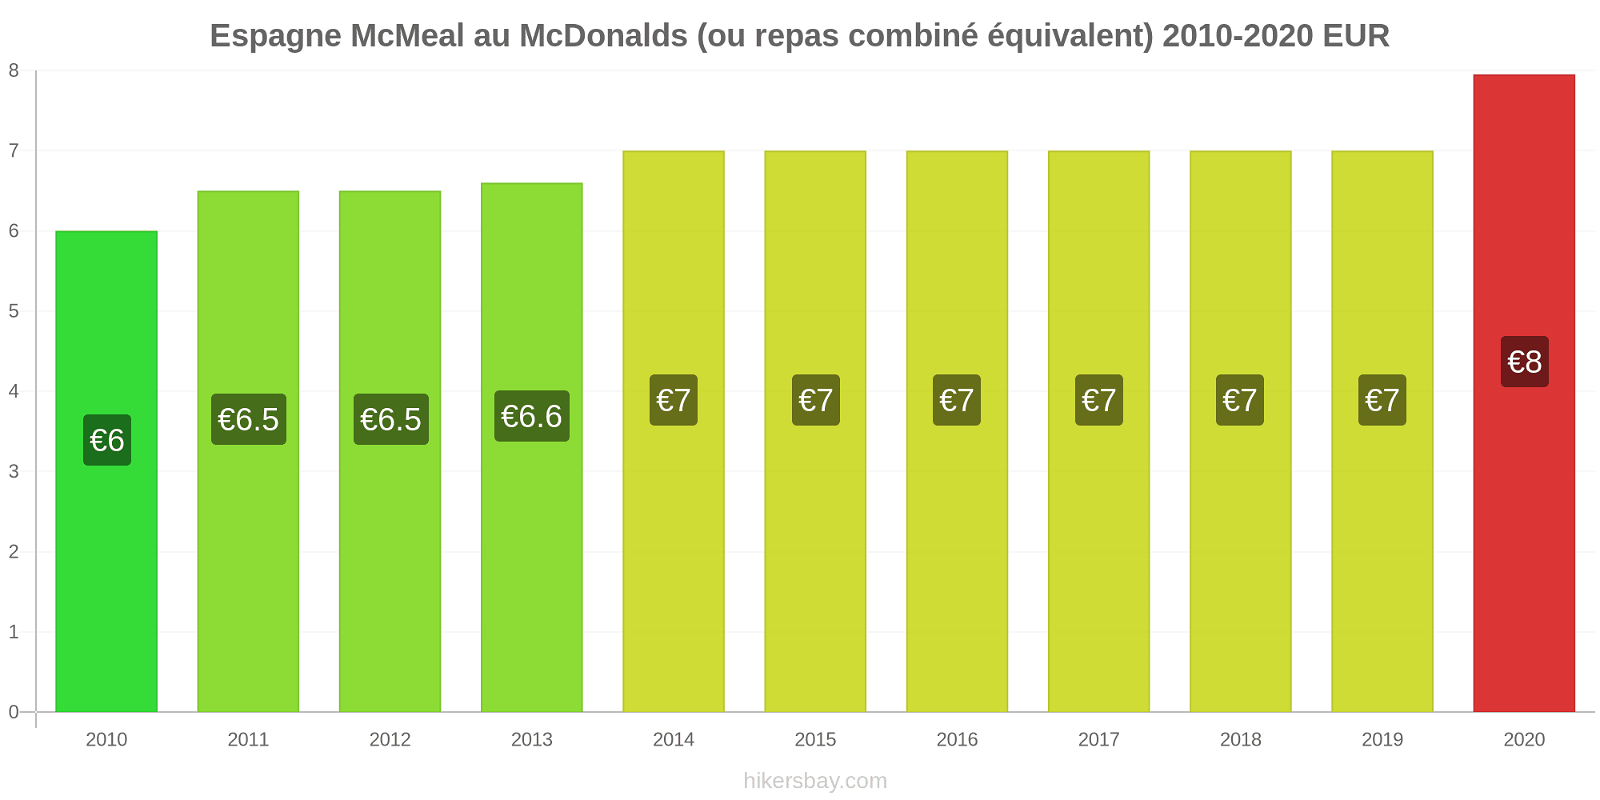 Espagne changements de prix McMeal à McDonald ' s (ou Combo équivalent tourteau) hikersbay.com